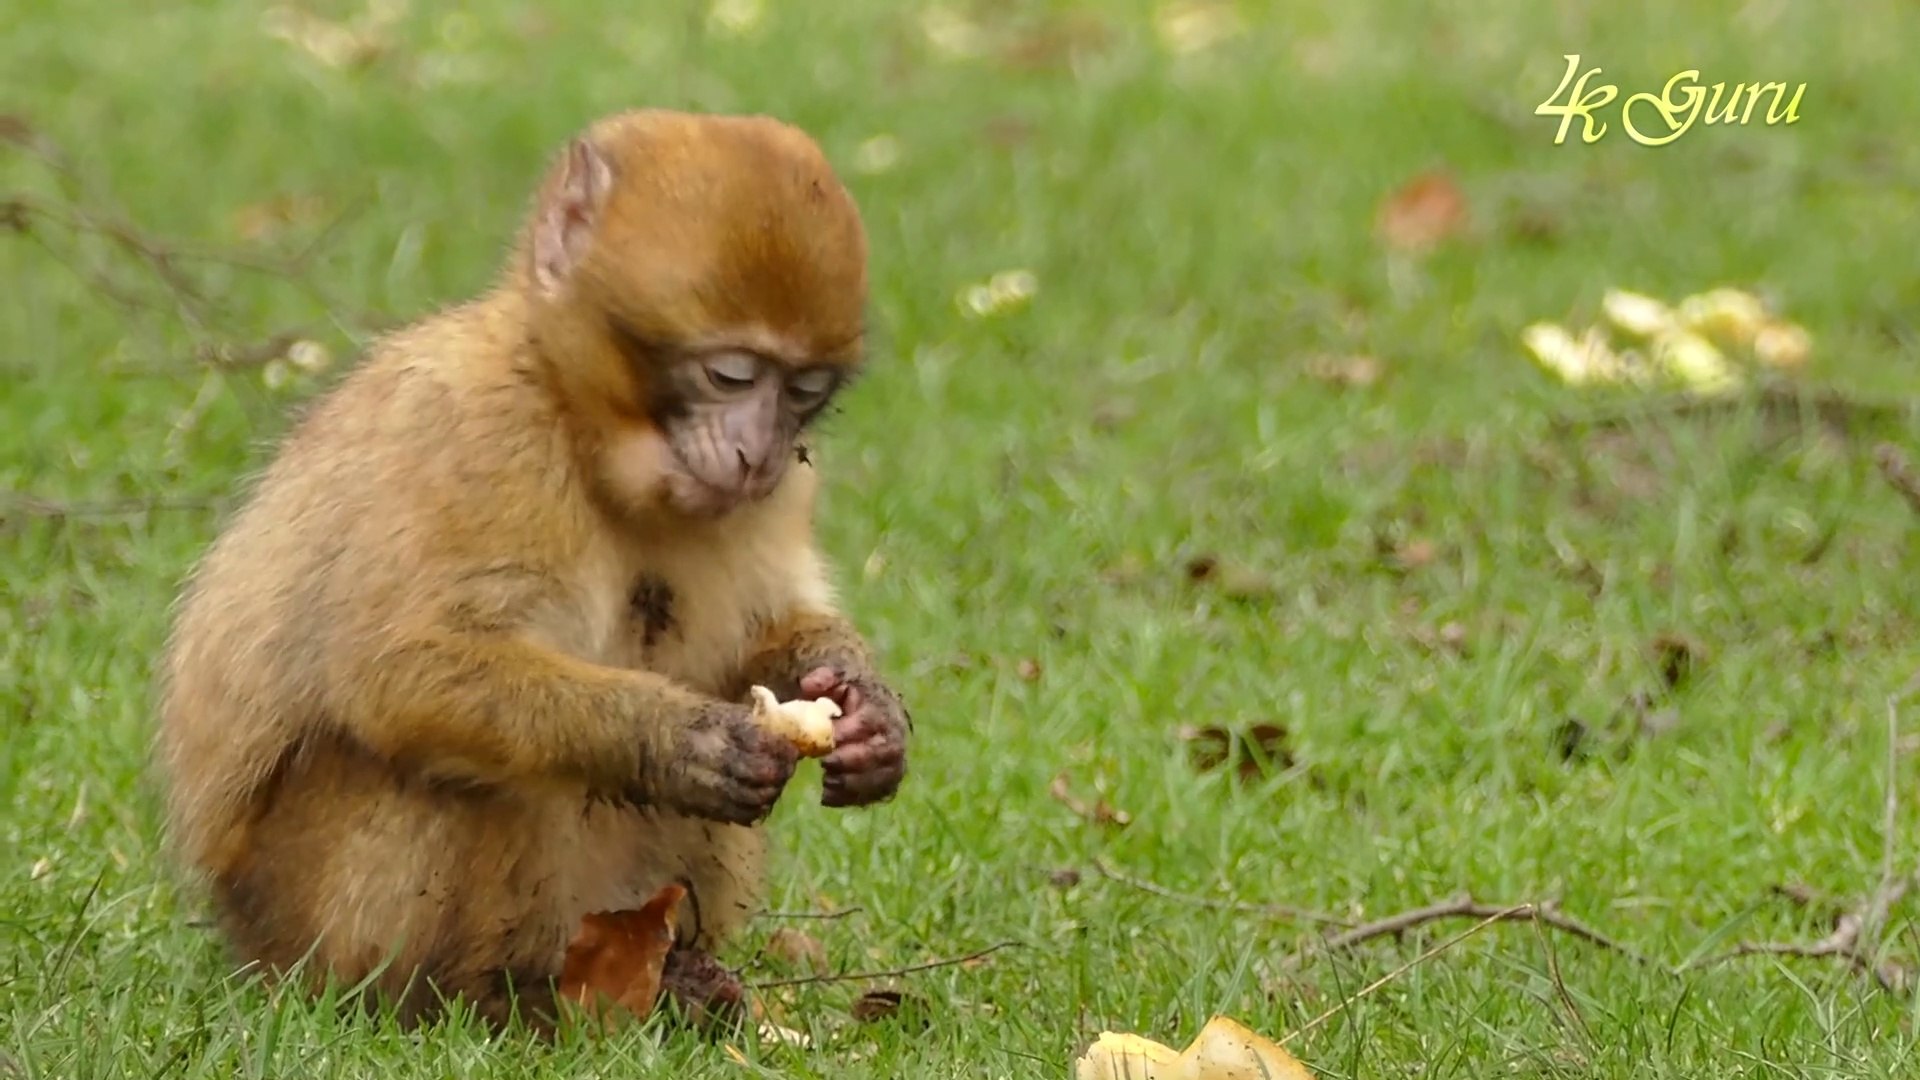 Little Monkey Baby 4k Ultra HD | 4k Monkey Video